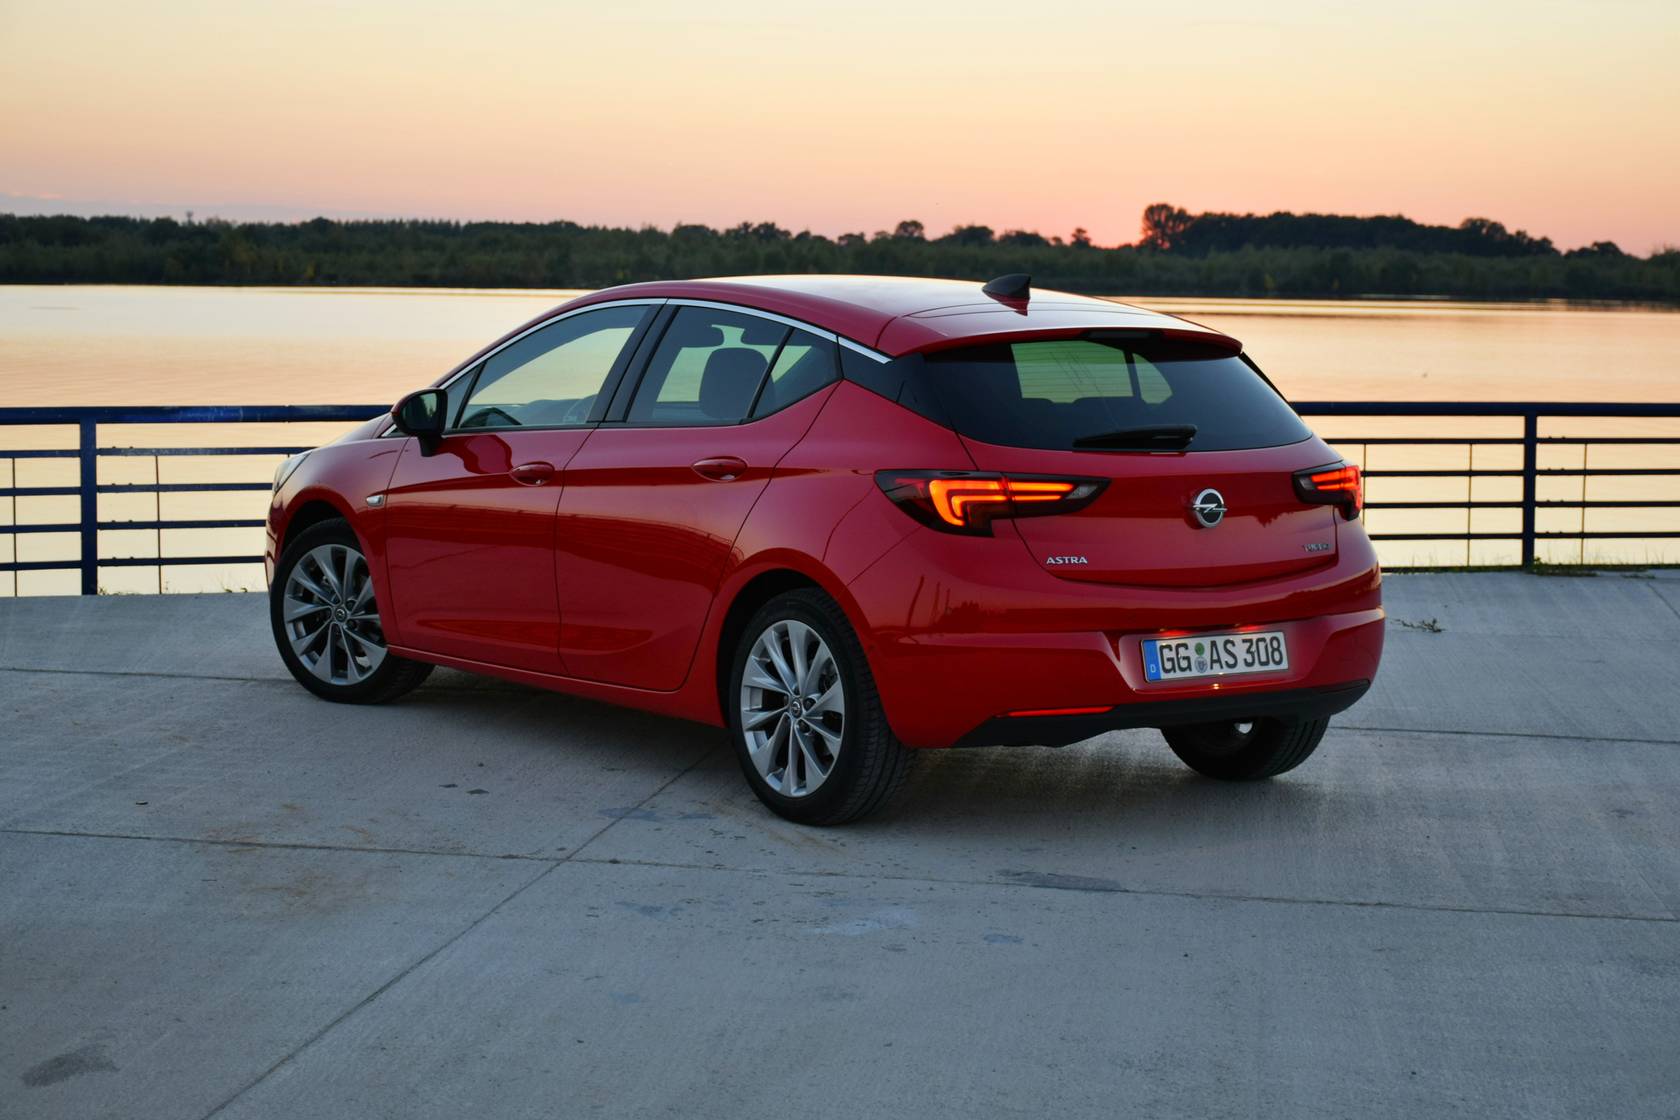 Szybka sprzedaż: Opel Astra to najczęściej sprzedawany model w 3-2-1 SPRZEDANE!